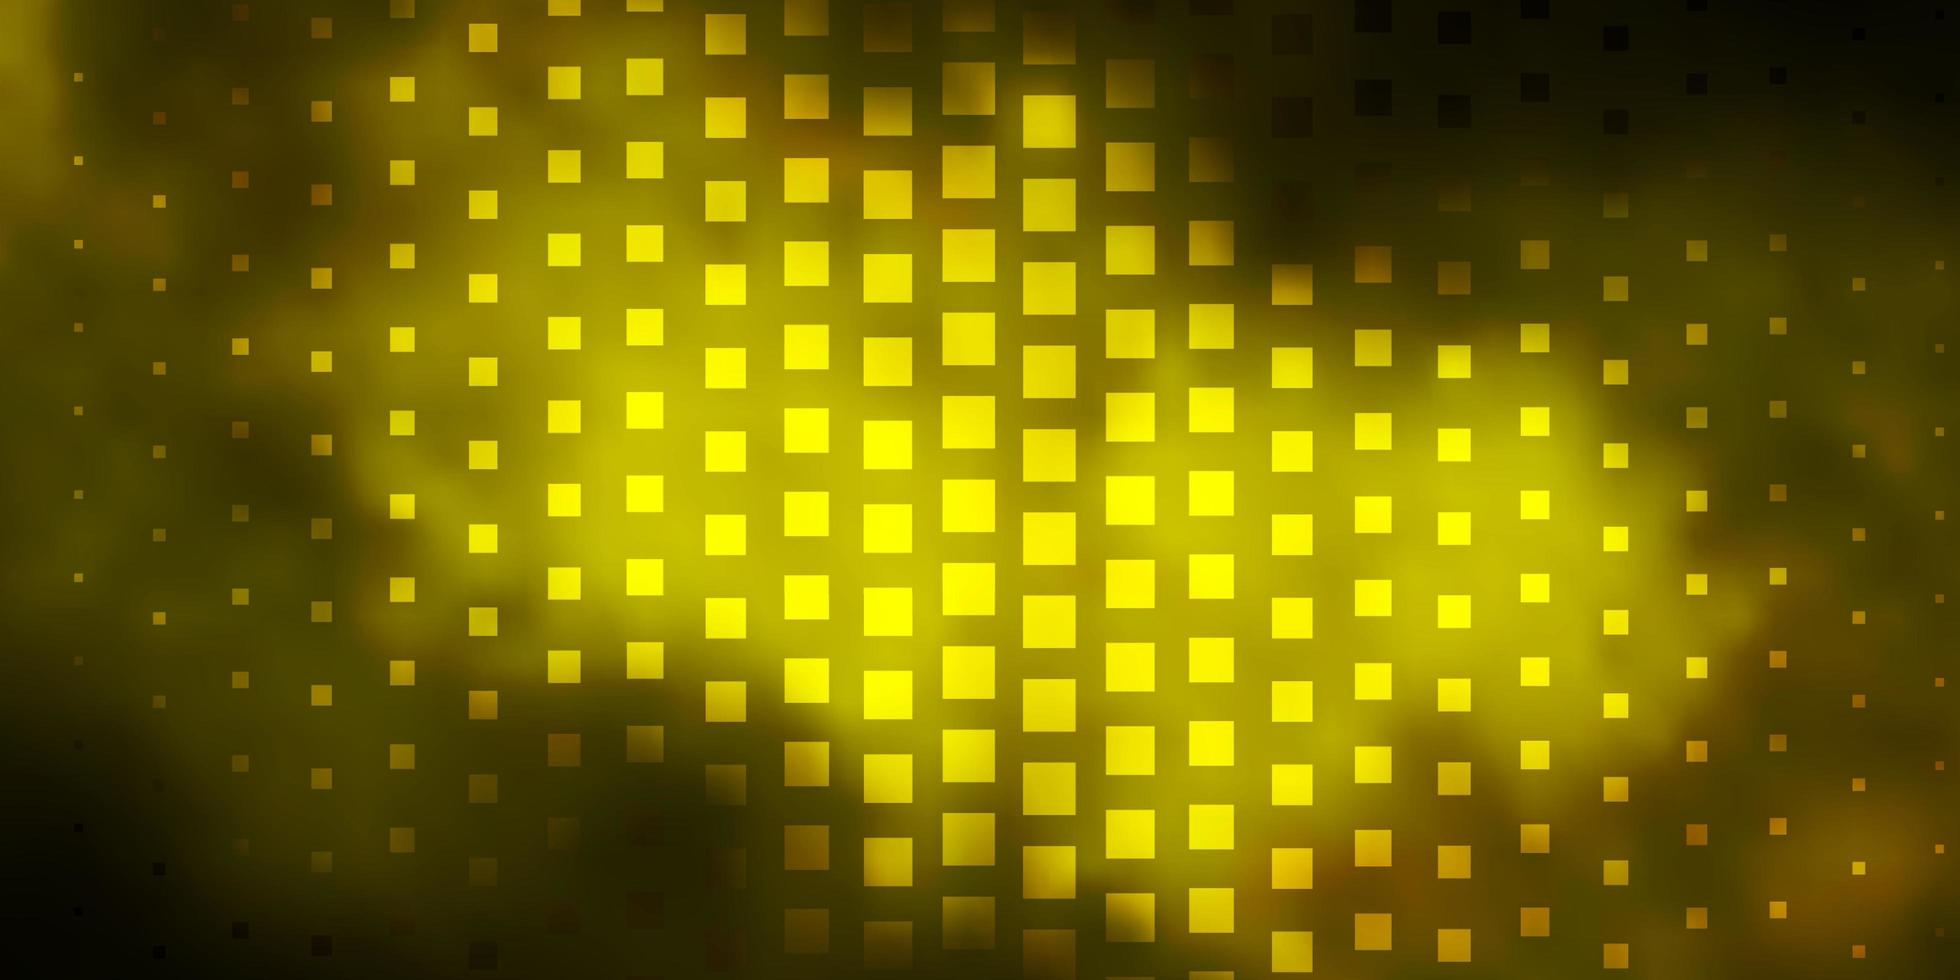 donkergroen geel vector achtergrond met rechthoeken rechthoeken met kleurrijke gradiënt op abstract achtergrondpatroon voor commercials advertenties